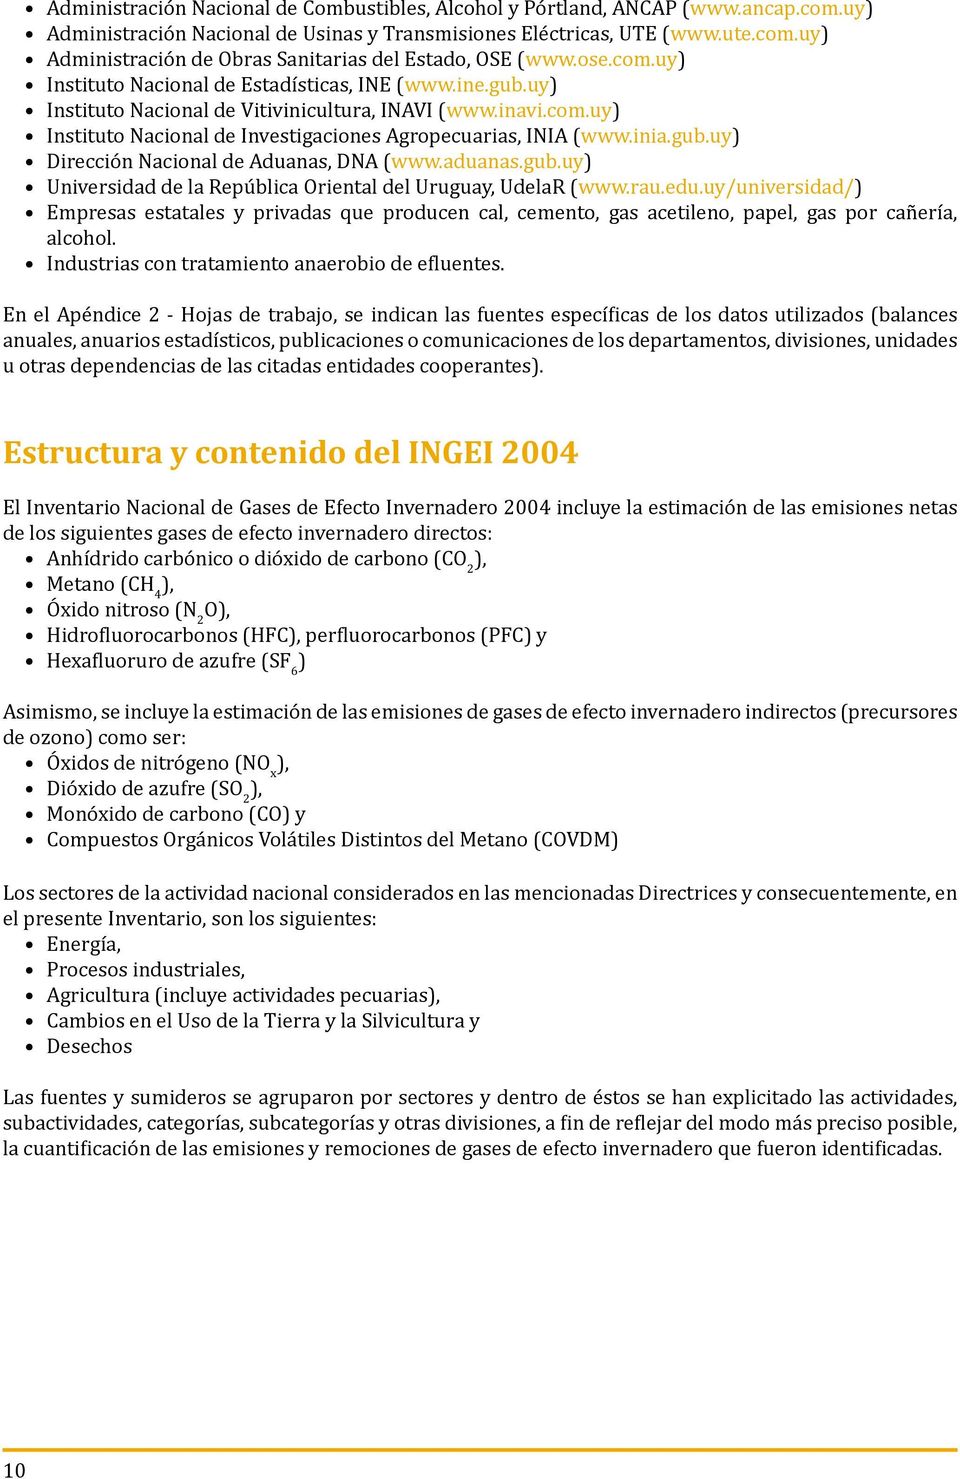 inia.gub.uy) Dirección Nacional de Aduanas, DNA (www.aduanas.gub.uy) Universidad de la República Oriental del Uruguay, UdelaR (www.rau.edu.